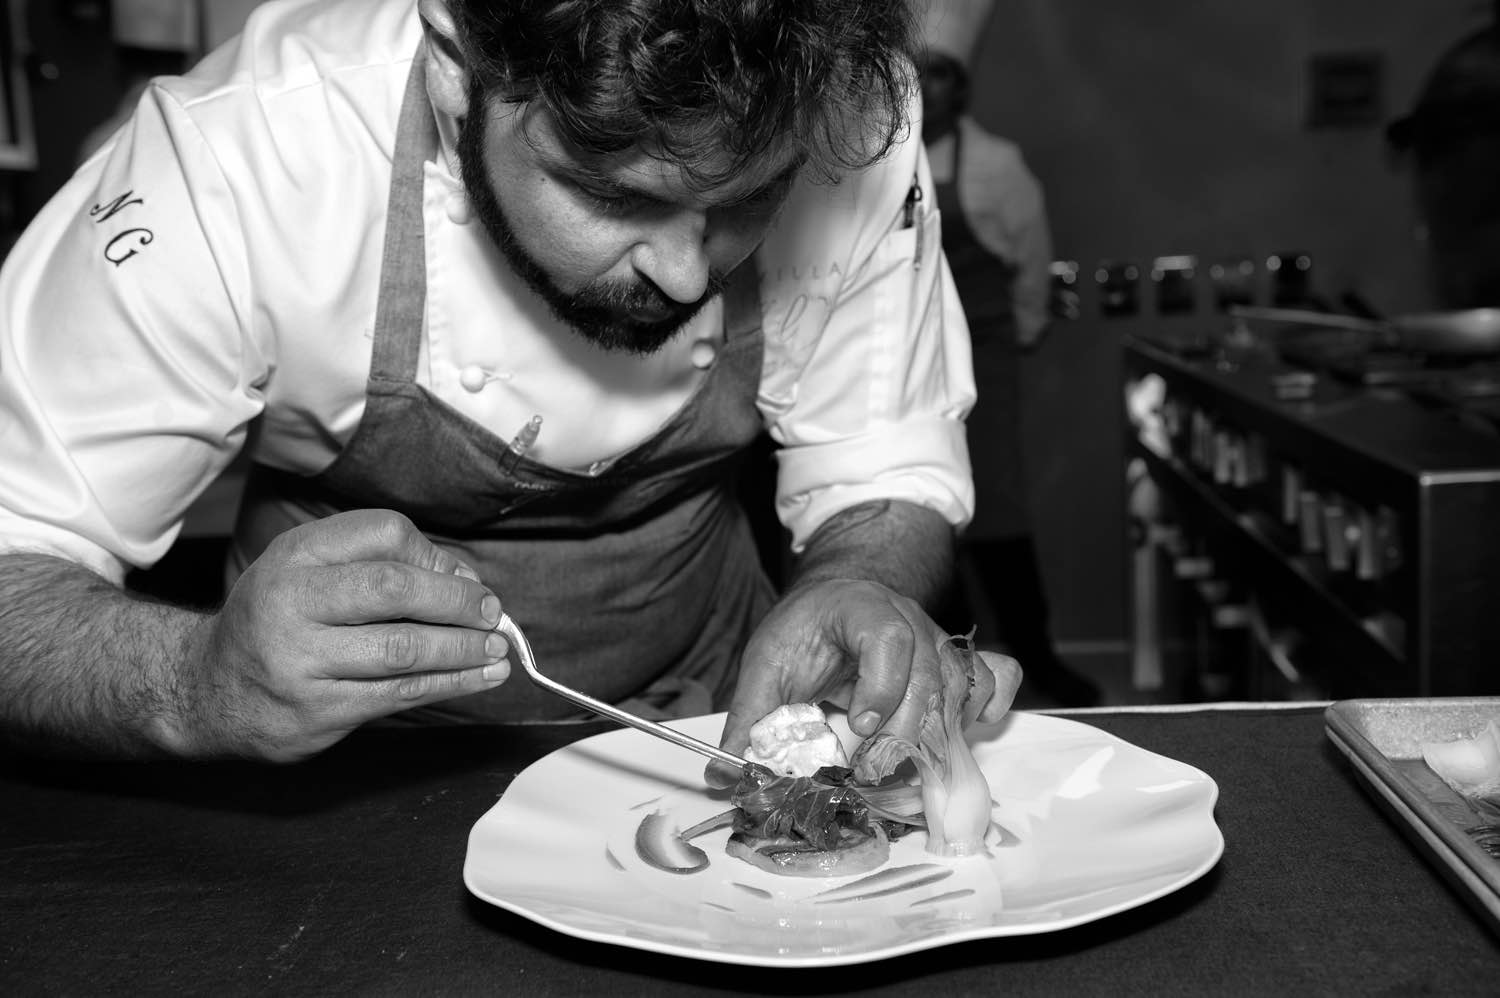 Intervista a Nicola Gronchi il giovane chef stellato de Il Parco di Villa Grey sul lungomare di Forte dei Marmi in Versilia